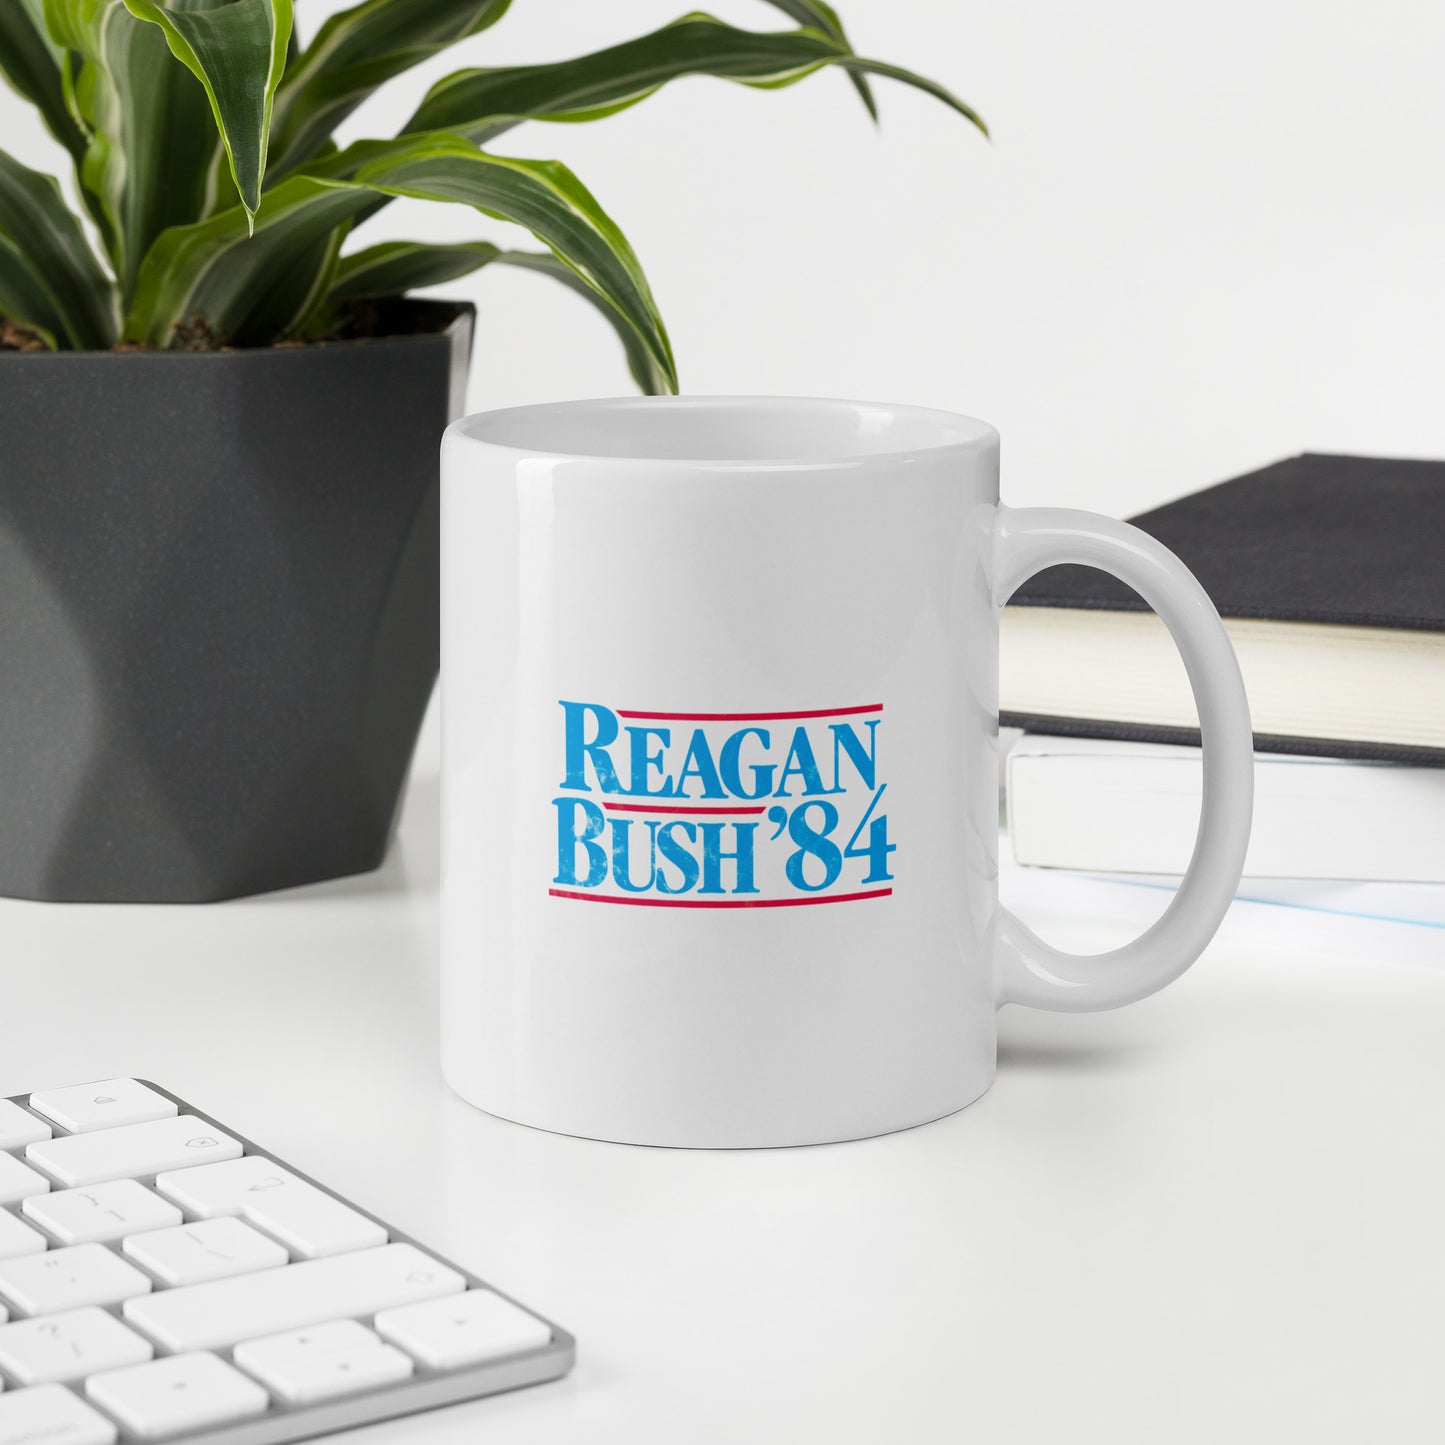 Reagan Bush '84 White Glossy Mug